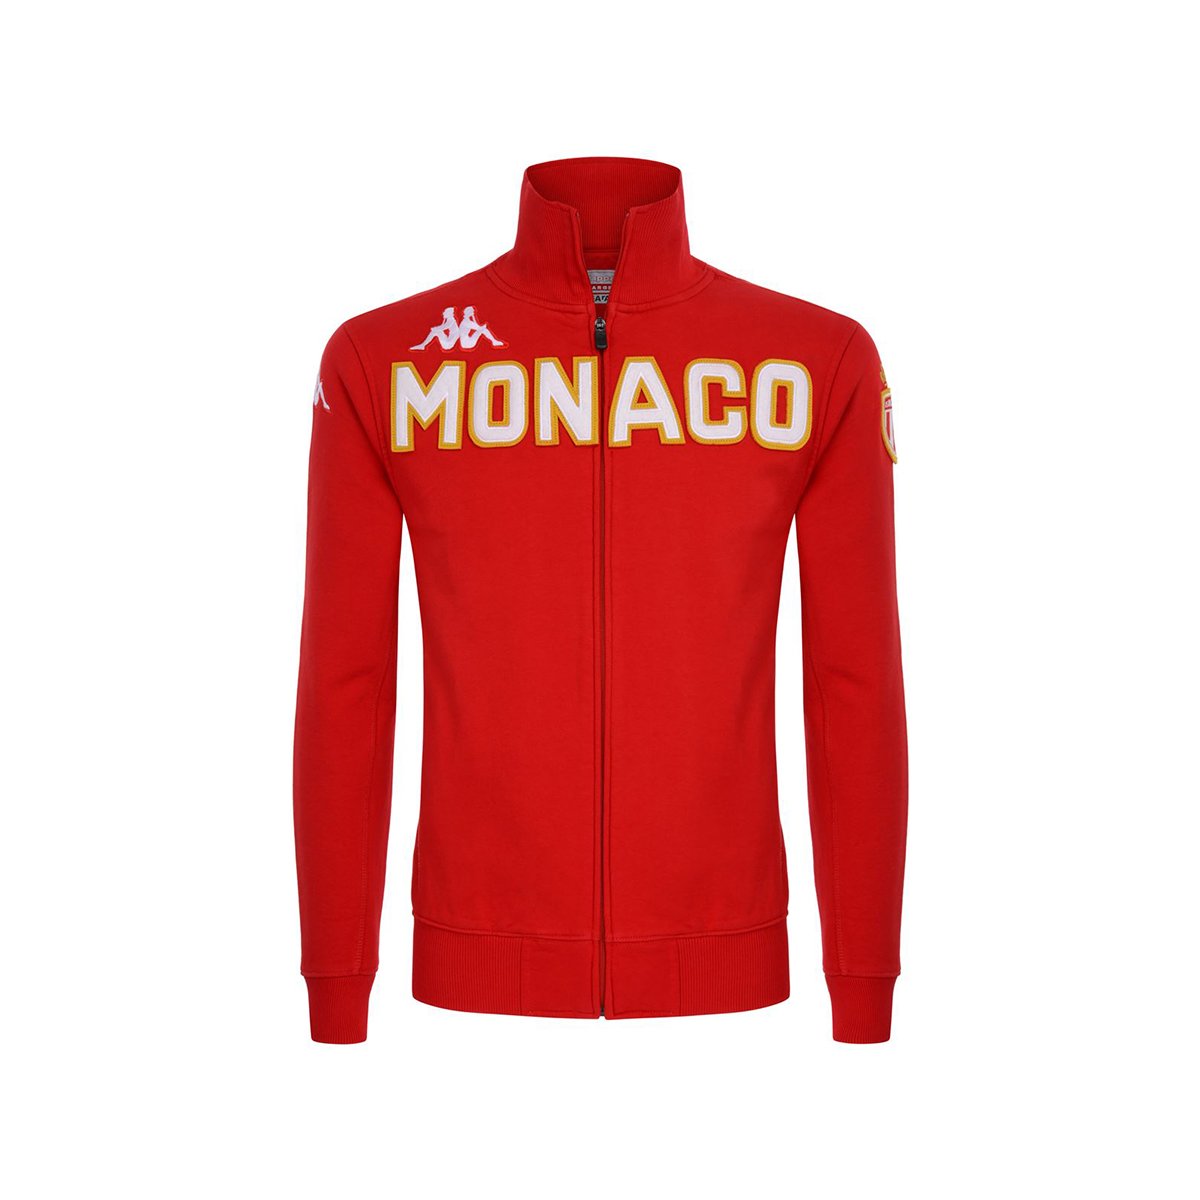 Chaqueta Eroi Fleece As Monaco Rojo Hombre - Imagen 2